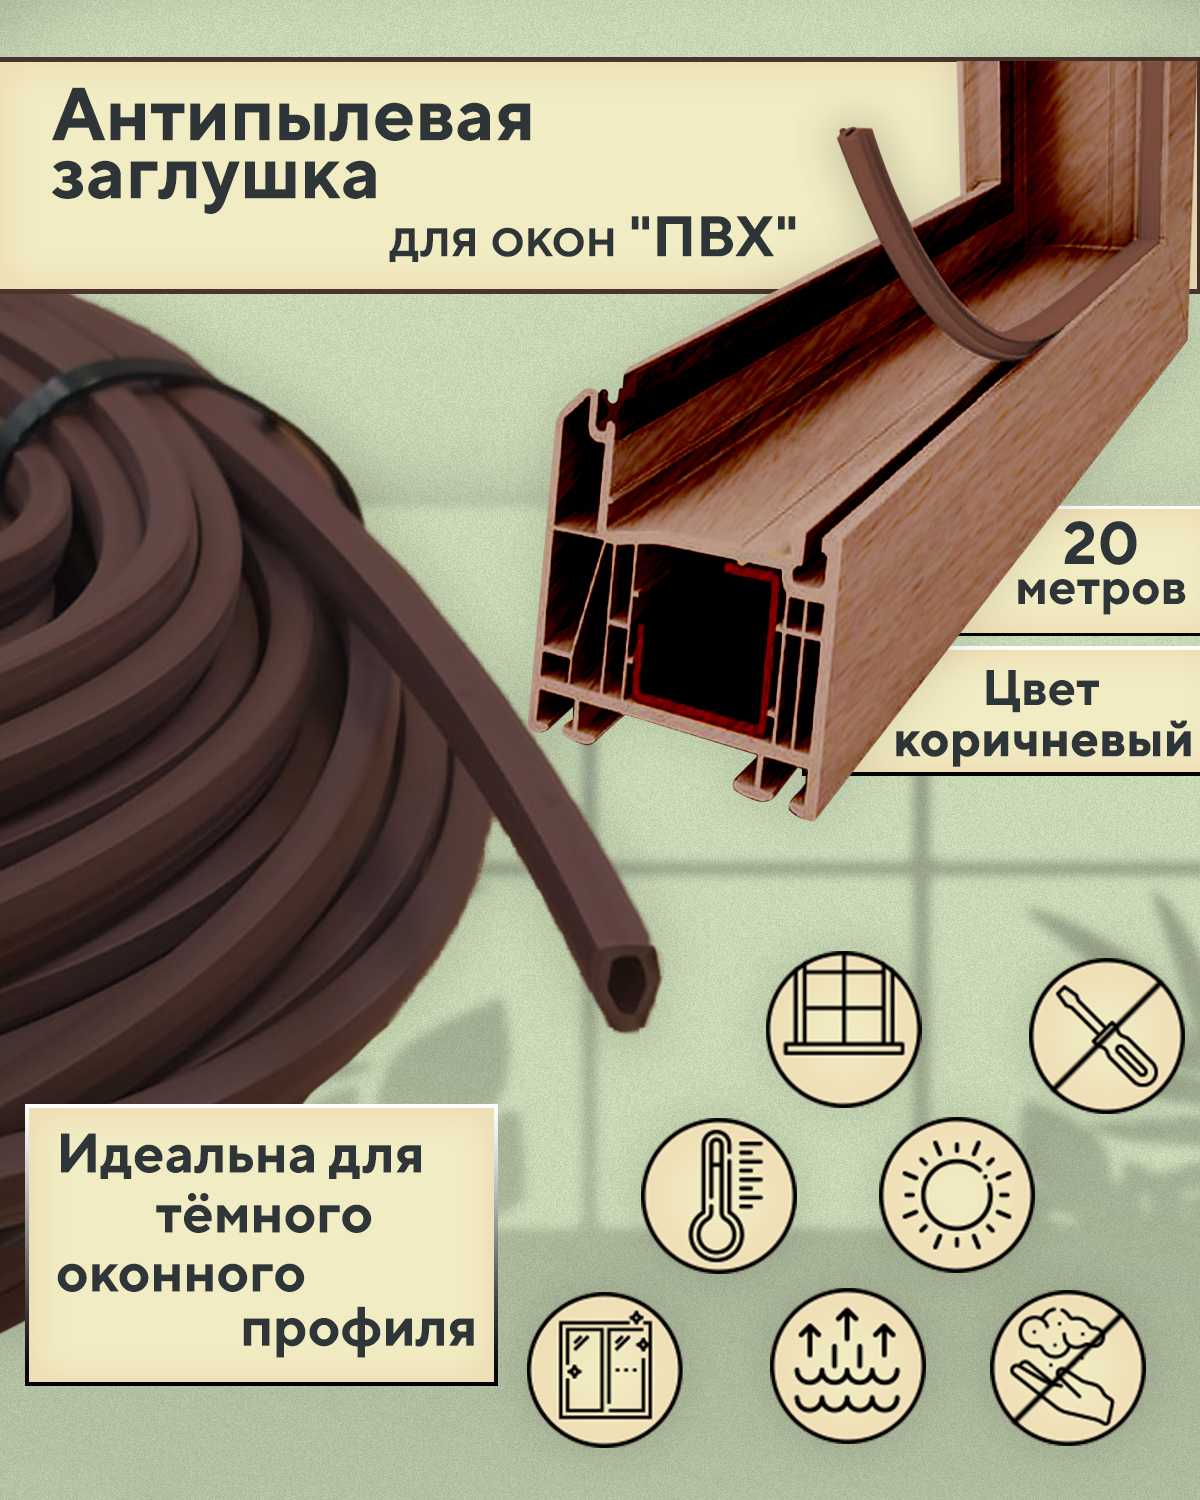 Антипылевая заглушка Contractor 20 метров, цвет коричневый антипылевая заглушка паза штапика komfort москитные системы